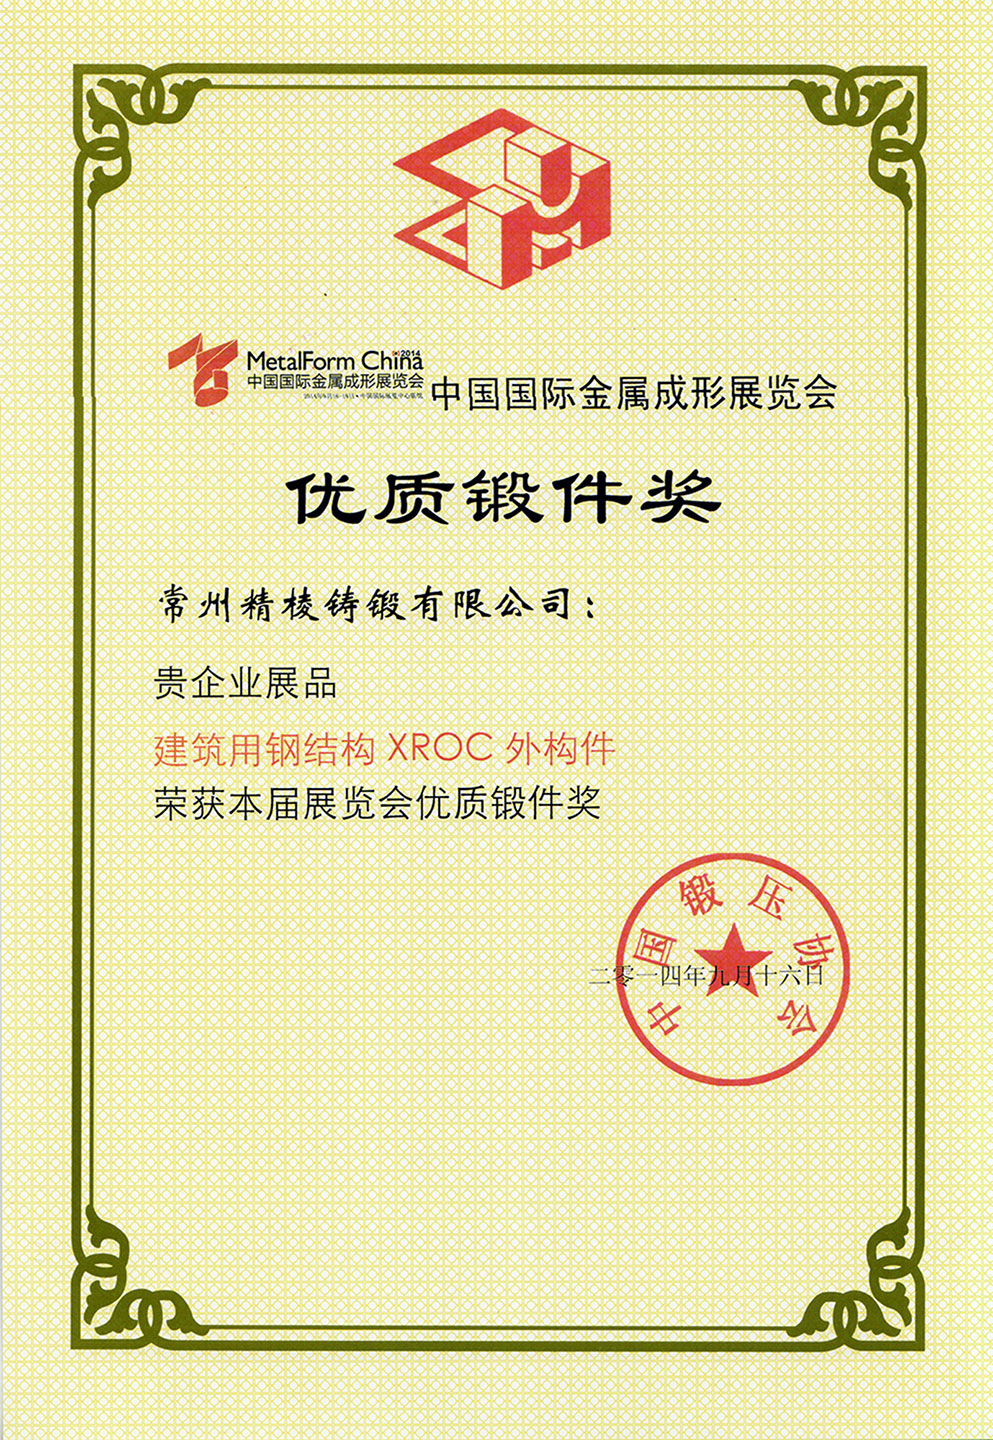 中国国际金属成形展览会优质锻件奖（XROC外构件）